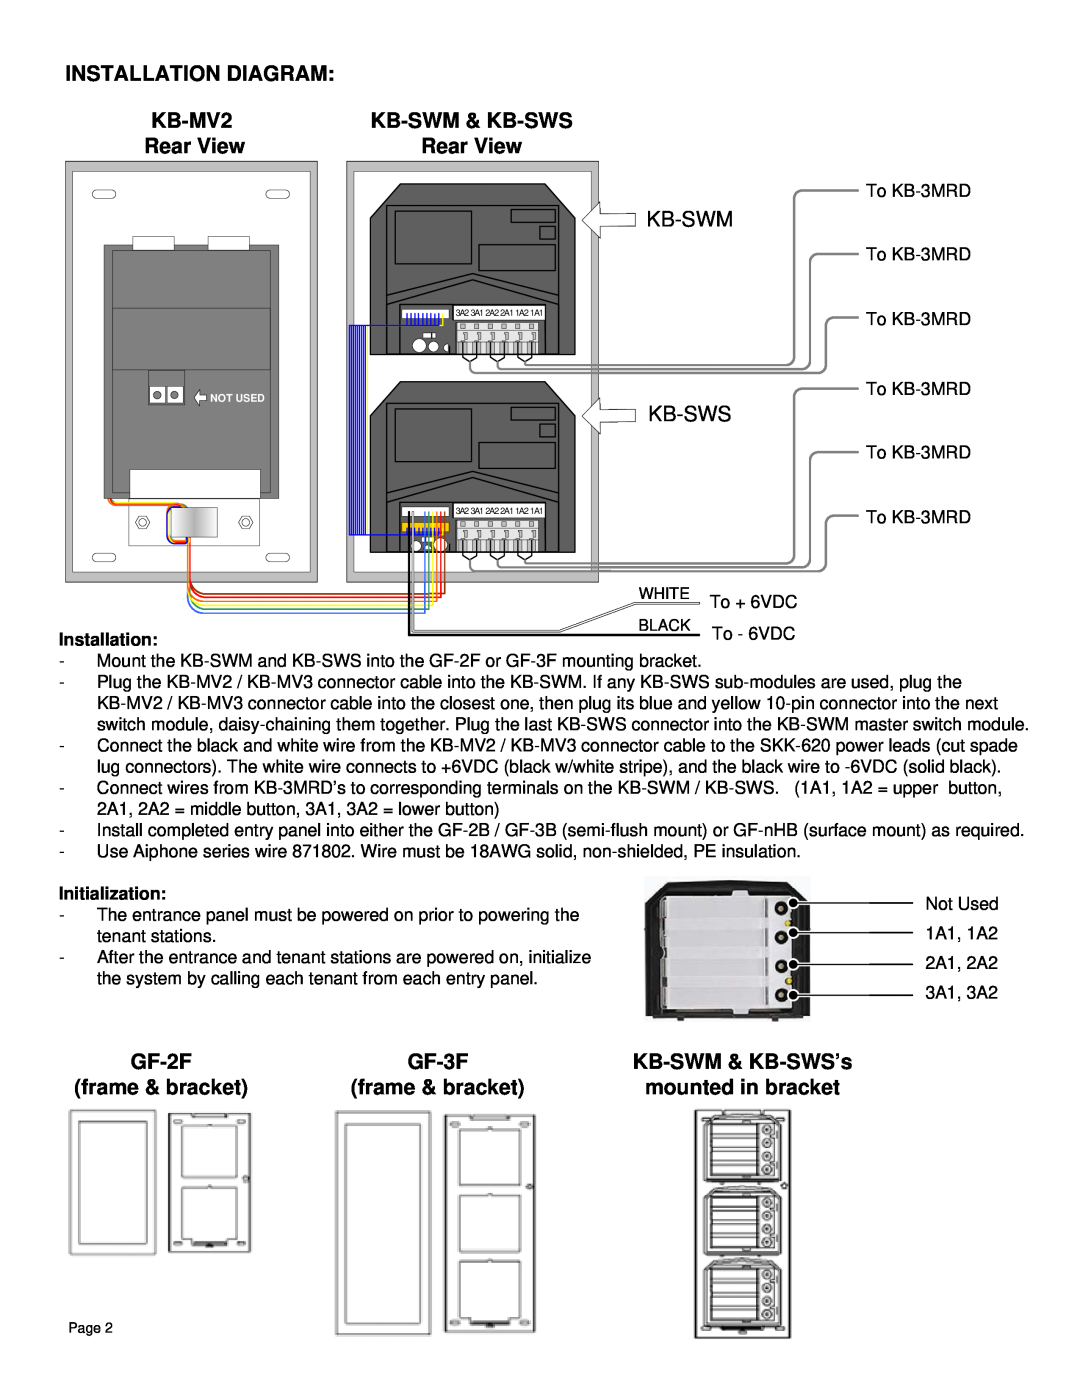 Aiphone KB-SWM Installation Diagram, Rear View, Kb-Swm, Kb-Sws, GF-2F, GF-3F, frame & bracket, mounted in bracket, KB-MV2 